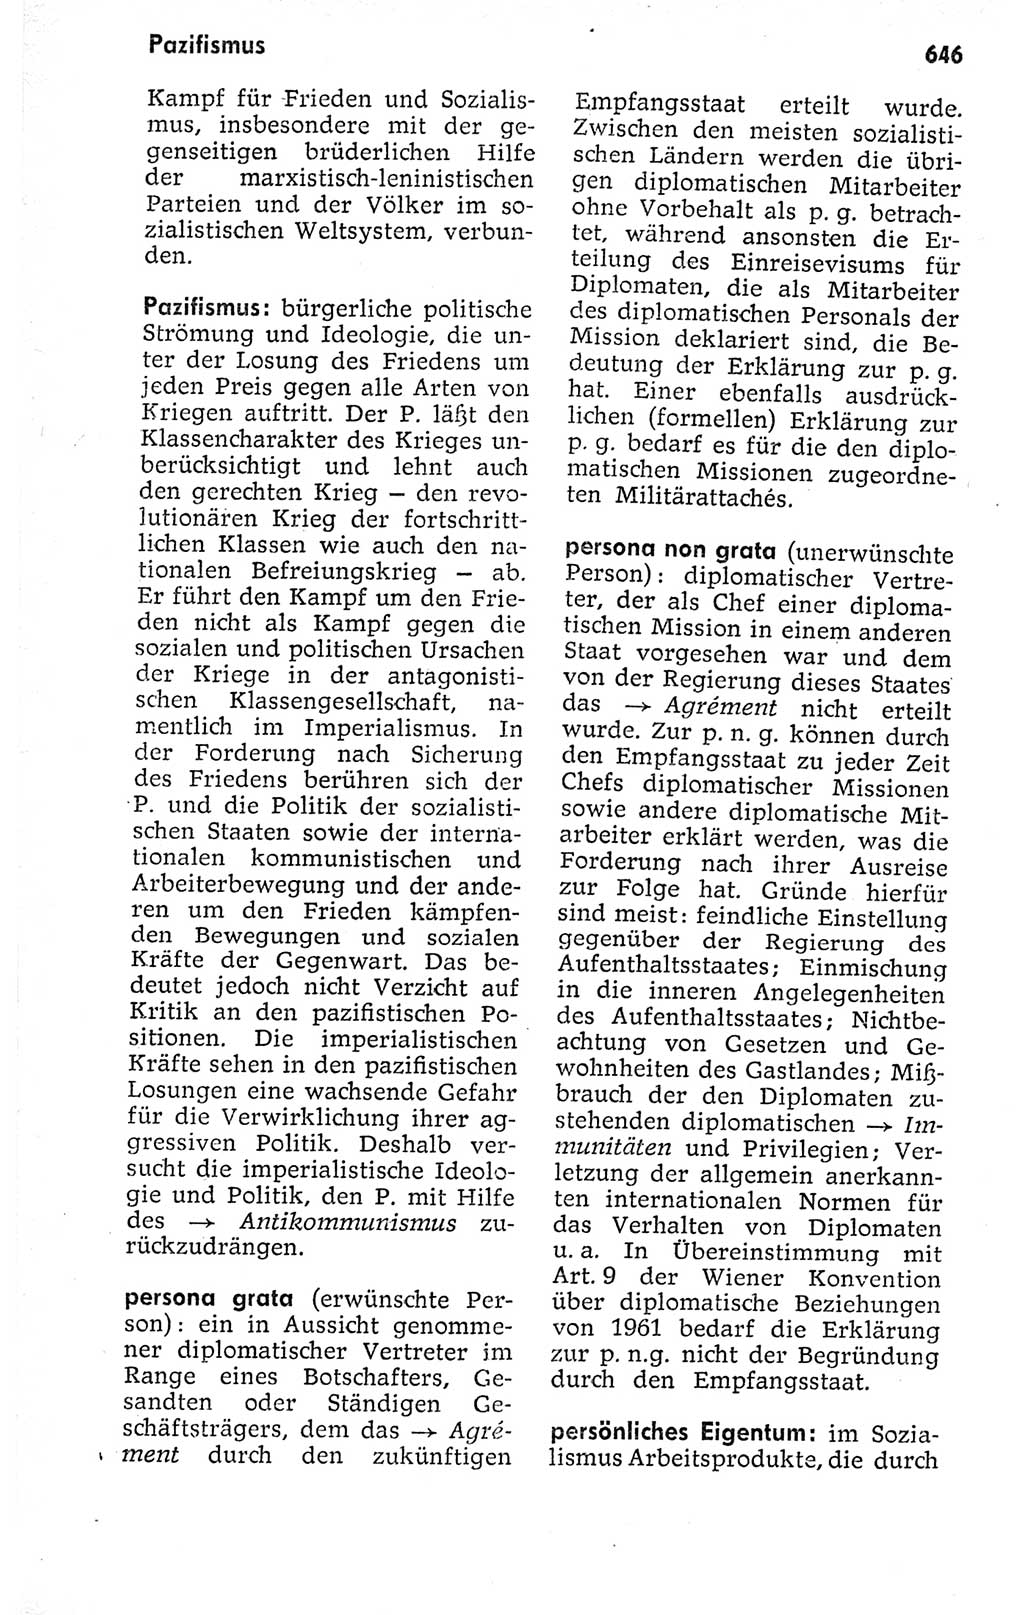 Kleines politisches Wörterbuch [Deutsche Demokratische Republik (DDR)] 1973, Seite 646 (Kl. pol. Wb. DDR 1973, S. 646)